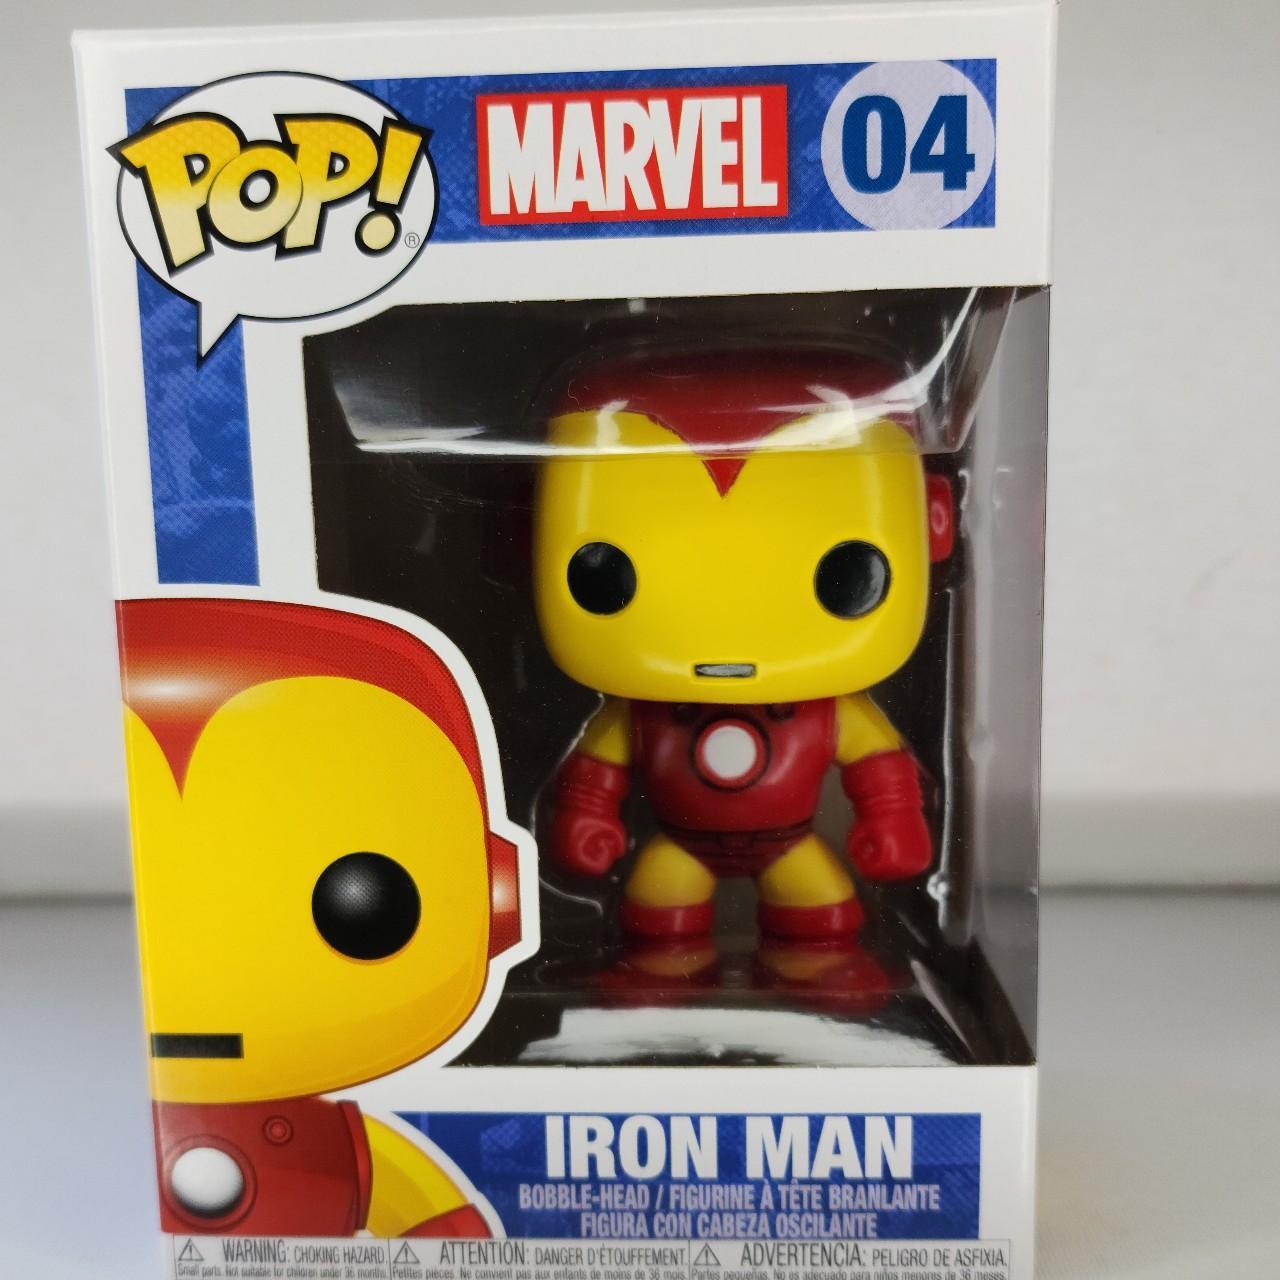 Funko POP! Marvel Iron Man #04 Vinyl Figure (Ironman)